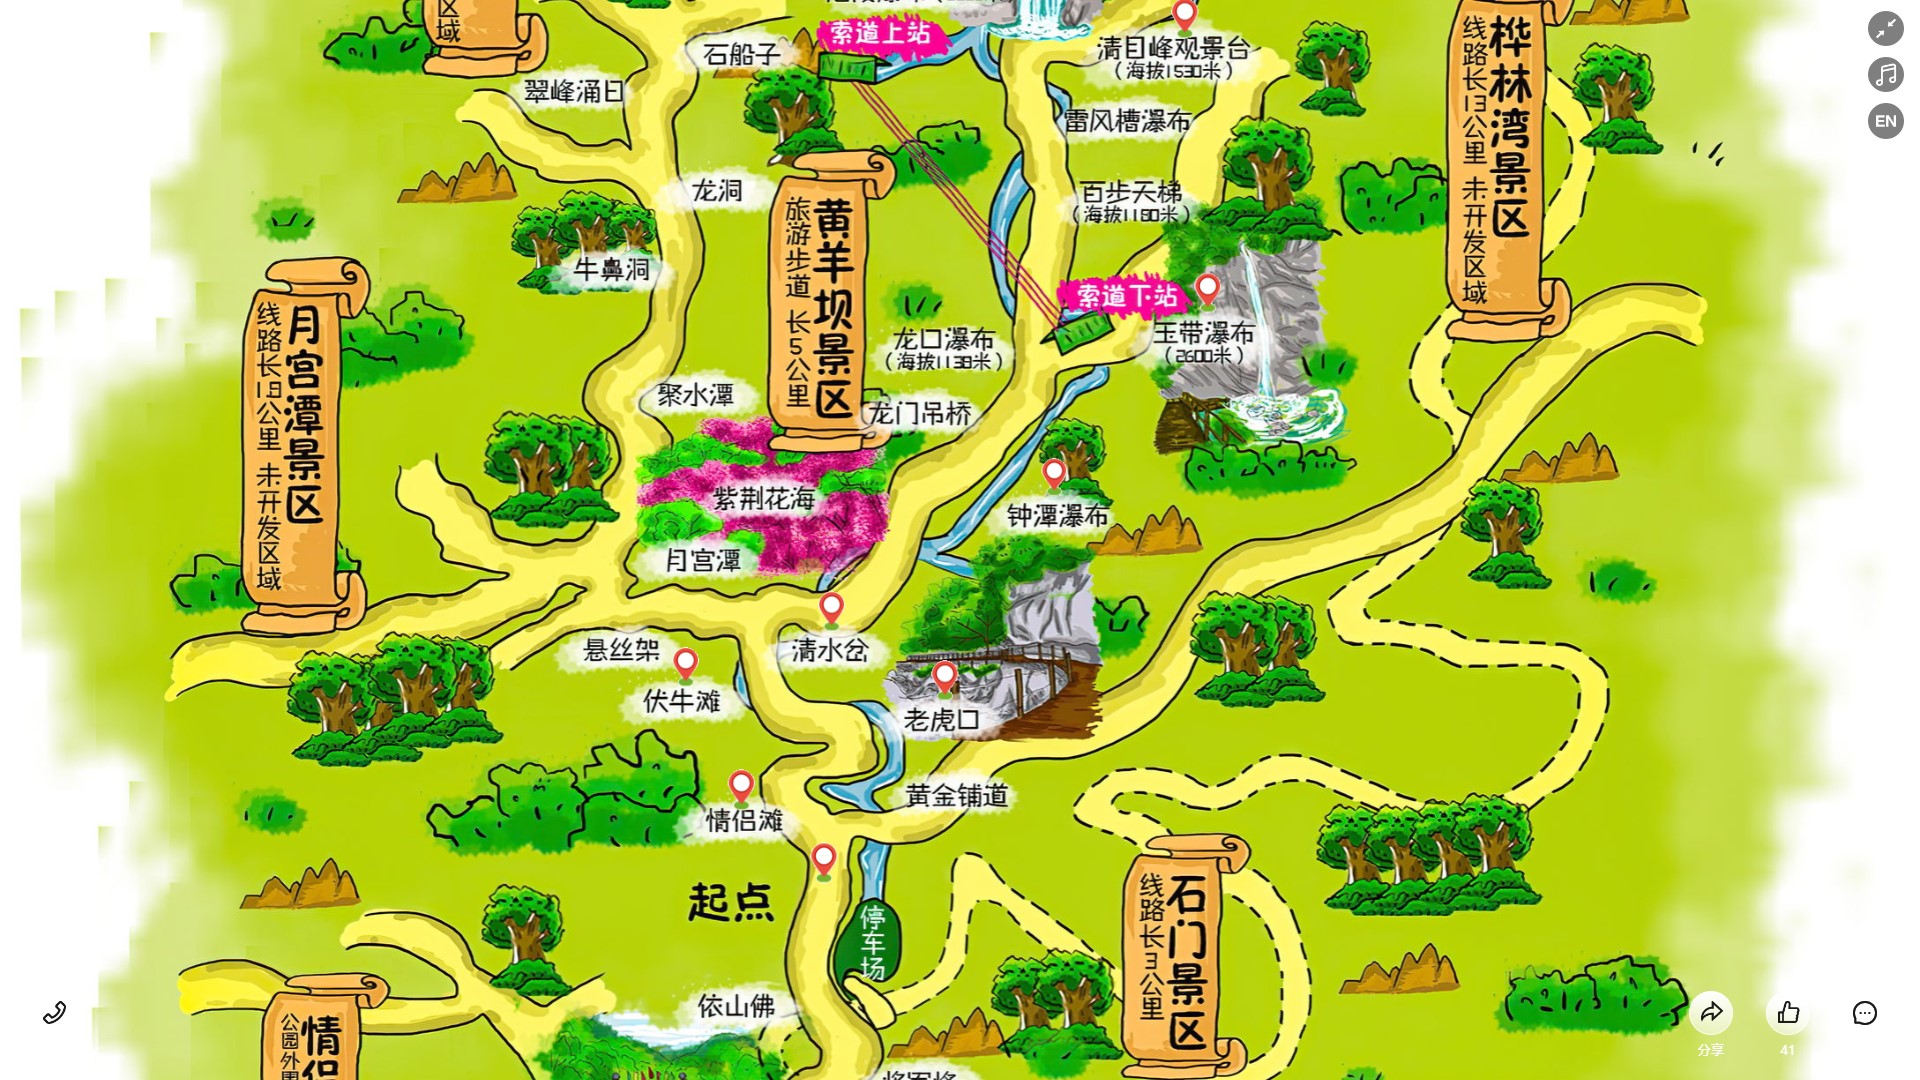 青松乡景区导览系统